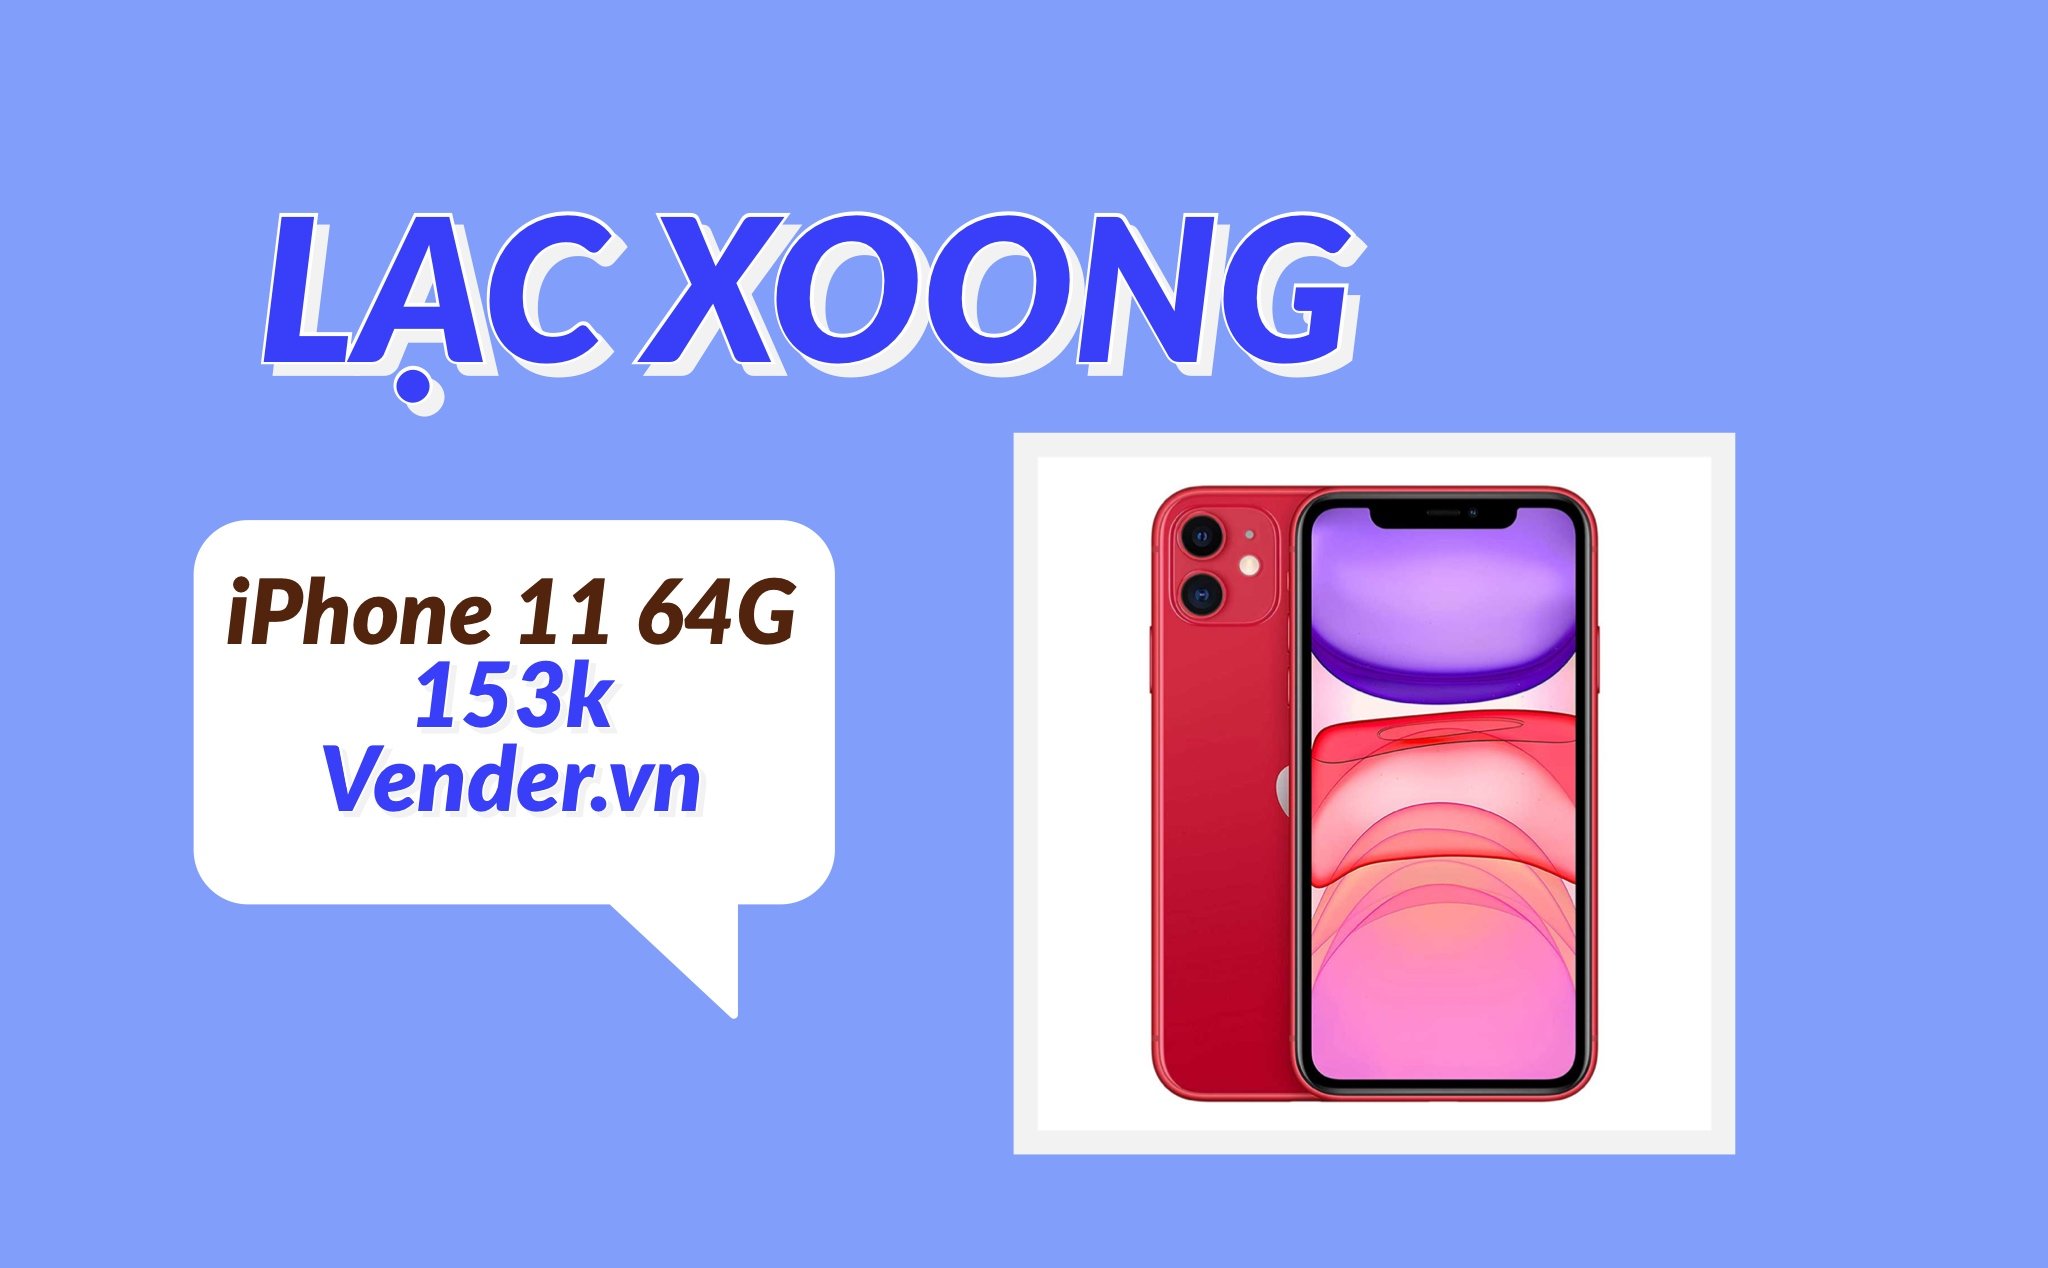 Lạc Xoong 2022: Vender.vn bán iPhone 11 64GB, giá 153 ngàn đồng